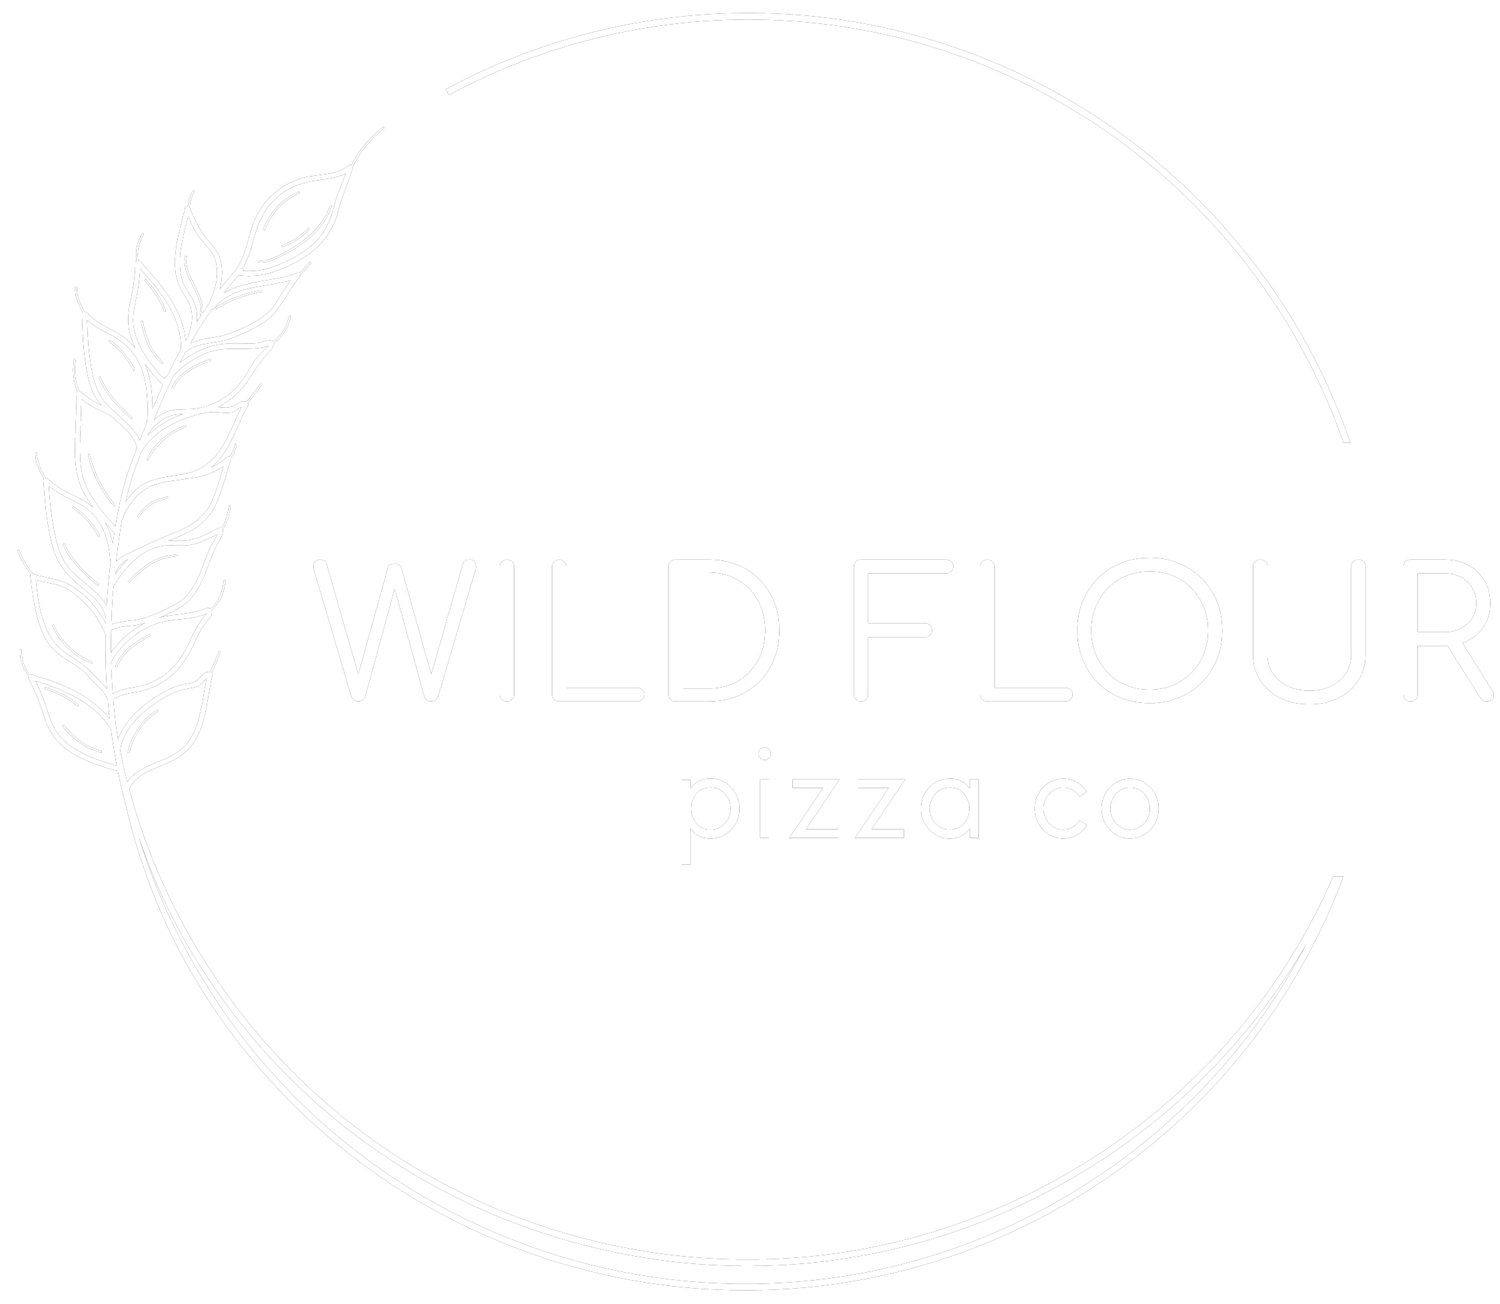 Wild Flour Pizza Co